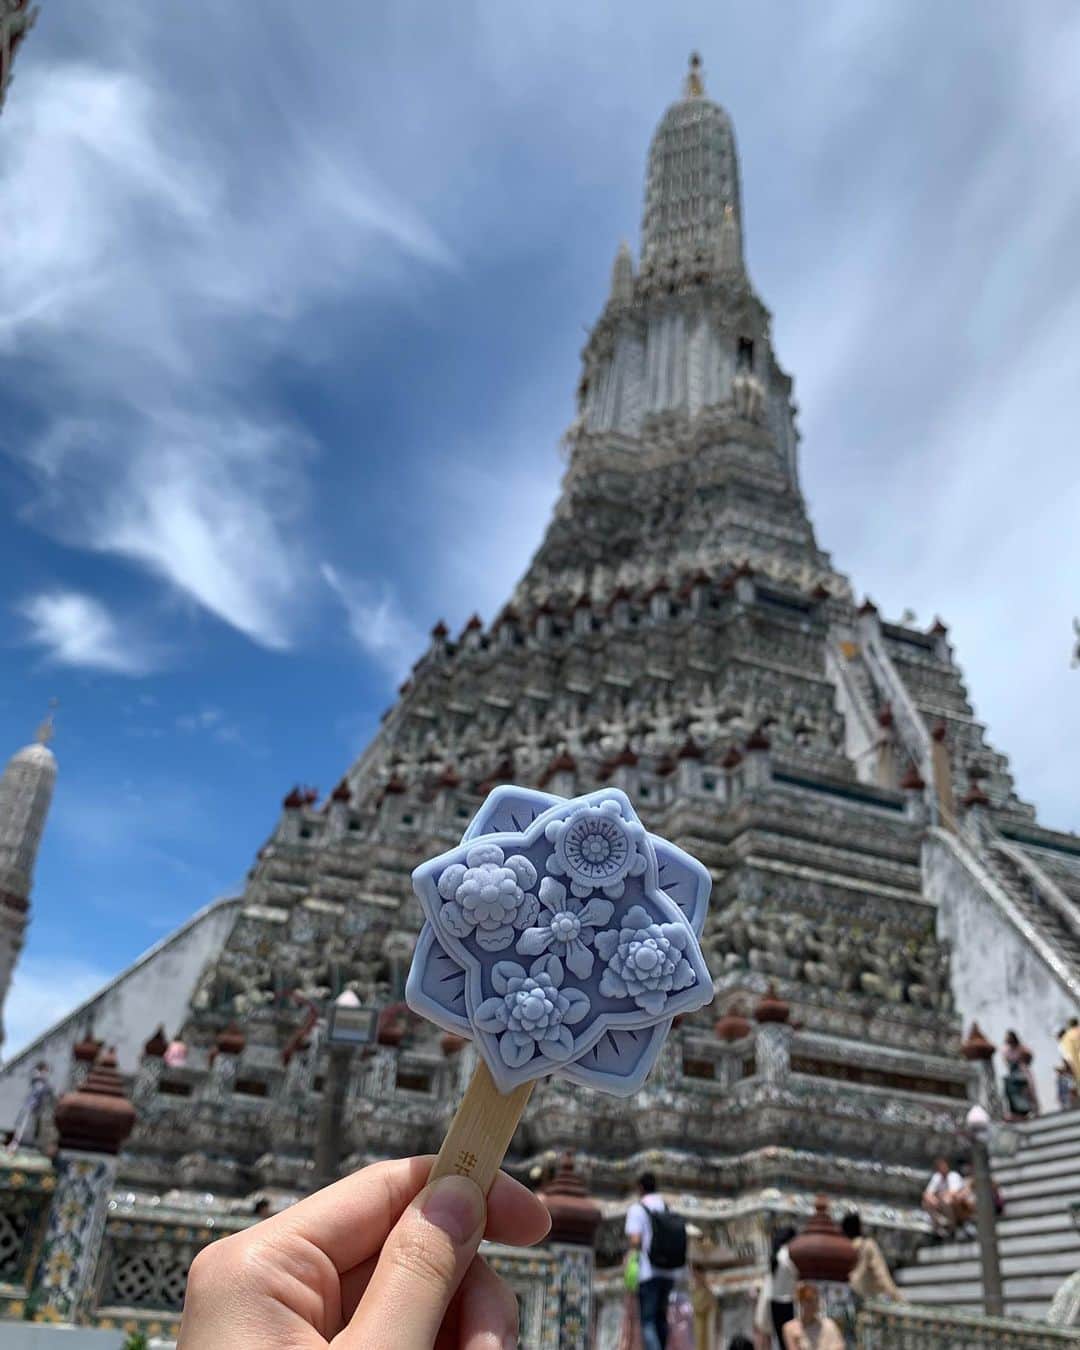 職人.comさんのインスタグラム写真 - (職人.comInstagram)「【ワット・アルンと名物アイス】  夏の終わりに、タイの首都バンコクへ初めて行ってきました。一般的に6月～10月のタイは雨季といわれていますが、滞在中はラッキーなことにほとんど晴れていました。国民の約95%が仏教徒である仏教国タイにはさまざまな寺院があり、黄金に輝くきらびやかな寺院や像、装飾などを街のあちこちで目にします。その中で、バンコク三大寺院の一つであるワット・アルンは少し雰囲気が異なっていて、タイについて下調べをしていたときからここは実際に訪れて自分の目で見てみたいと思っていました。  「ワット・アルン」（正式名称：ワット・アルン・ラーチャワララーム）は、アユタヤ時代に建立されたバンコクのチャオプラヤー川沿いにある仏教寺院。ワット・アルンとは「暁の寺」という意味で、三島由紀夫が書いた小説のタイトルにもなっています。タイの硬貨、10バーツにも描かれ、世界中から訪れる観光客、そしてタイ国民から愛され続けている寺院です。朝、昼、夜でまったく違う表情を見せてくれるのもワット・アルンの魅力で、その名のとおり、朝焼けに染まる姿や夕日を背にしたシルエットはとても美しく、日中は日の光を反射して輝き、夜にはライトアップされます。  ワット・アルンへの行き方は、対岸のターティアン船着場から渡し船で向かう方法がポピュラーです。日本円にして数十円程度で、ワット・アルンをはじめとしたタイの景色を楽しみながらチャオプラヤー川を渡ることができます。  船から降りて目の前にそびえ立つのは、この色とりどりの5基の仏塔。大仏塔の高さは75メートル、台座の周囲は234メートルもあり、ヒンドゥー教の聖地カイサーラ山をかたどっているといわれています。仏塔の表面には無数の陶片が埋め込まれており、遠くから眺めていた印象とはまた違った美しさ。実際に仏塔の上に登って間近で見て回ることができるため、ぜひ一周して一つ一つの模様や形、配置、色を見比べてみてほしいのですが、階段が非常に急なのです。タイの民族衣装を着て写真撮影をしている観光客を多く見かけたのですが、あの衣装でこの階段を上り下りするガッツは尊敬に値します。階段では転がり落ちないよう、くれぐれもお気をつけください。それも含めて、探検気分を楽しめてエキサイティングな体験でした。  ワット・アルンを歩き回り一汗かいたあとは、敷地内にある「アルン・カフェ」という売店のような小さなカフェへ。こちらには、ワット・アルンの装飾タイルを模したアイスが売られています。このかわいい見た目を侮るなかれ、実際に頼んでアイスを目の前にした時、模様の緻密さや凹凸、周りを囲む4つの花がすべて異なっているデザイン性の高さなどに驚きました。アイスなのに美術品のよう。眼福です。もったいないですが、溶ける前に食べなければいけません。味は、オレンジのタイティーと青のバタフライピーの2種類。どちらもタイで愛されているお茶で、味からもしっかりとタイを感じられるのも嬉しいところ。アイスや飲み物を片手に、ベンチに腰掛けてゆっくりする人々でカフェの周りはにぎわっていました。このアイスは今年の5月から販売開始したようなのですが、こうして歴史的建造物の模様やイメージなどをデザインに落とし込み、更に多くの人に興味を持ってもらうきっかけにするというのは、この先その場所を残していくうえでとても良い方法だと感じました。  帰国して写真を見返していて、綺麗だった、行って良かったと改めて思うお寺だったため、タイに行かれる際はぜひおすすめしたい場所です。  ワット・アルン（暁の寺） https://goo.gl/maps/Z9fUn5pwP9iTDgXb6 アルン・カフェ https://goo.gl/maps/dJ1ERjfiFd3p5UxE6  参考資料 https://www.thailandtravel.or.jp/wat-arun/ https://www.arukikata.co.jp/web/article/item/2210744/ https://www.bangkoknavi.com/miru/40/ https://www.tokyo-np.co.jp/article/265121  @shokunincom  #職人ドットコム #京都市 #上京区 #中京区 #西陣 #キッチン用品 #調理道具 #調理器具 #料理道具 #台所道具 #手仕事 #暮らしの道具 #暮らしを楽しむ #工芸品 #民芸 #民藝 #器のある暮らし #焼き物 #生活工芸 #ワットアルン #ワットアルンラーチャワララーム #名物アイス #眼福 #暁の寺 #アルンカフェ #仏塔 #タイ観光 #バンコク #タイ名所 #タイのお寺」9月27日 14時52分 - shokunincom